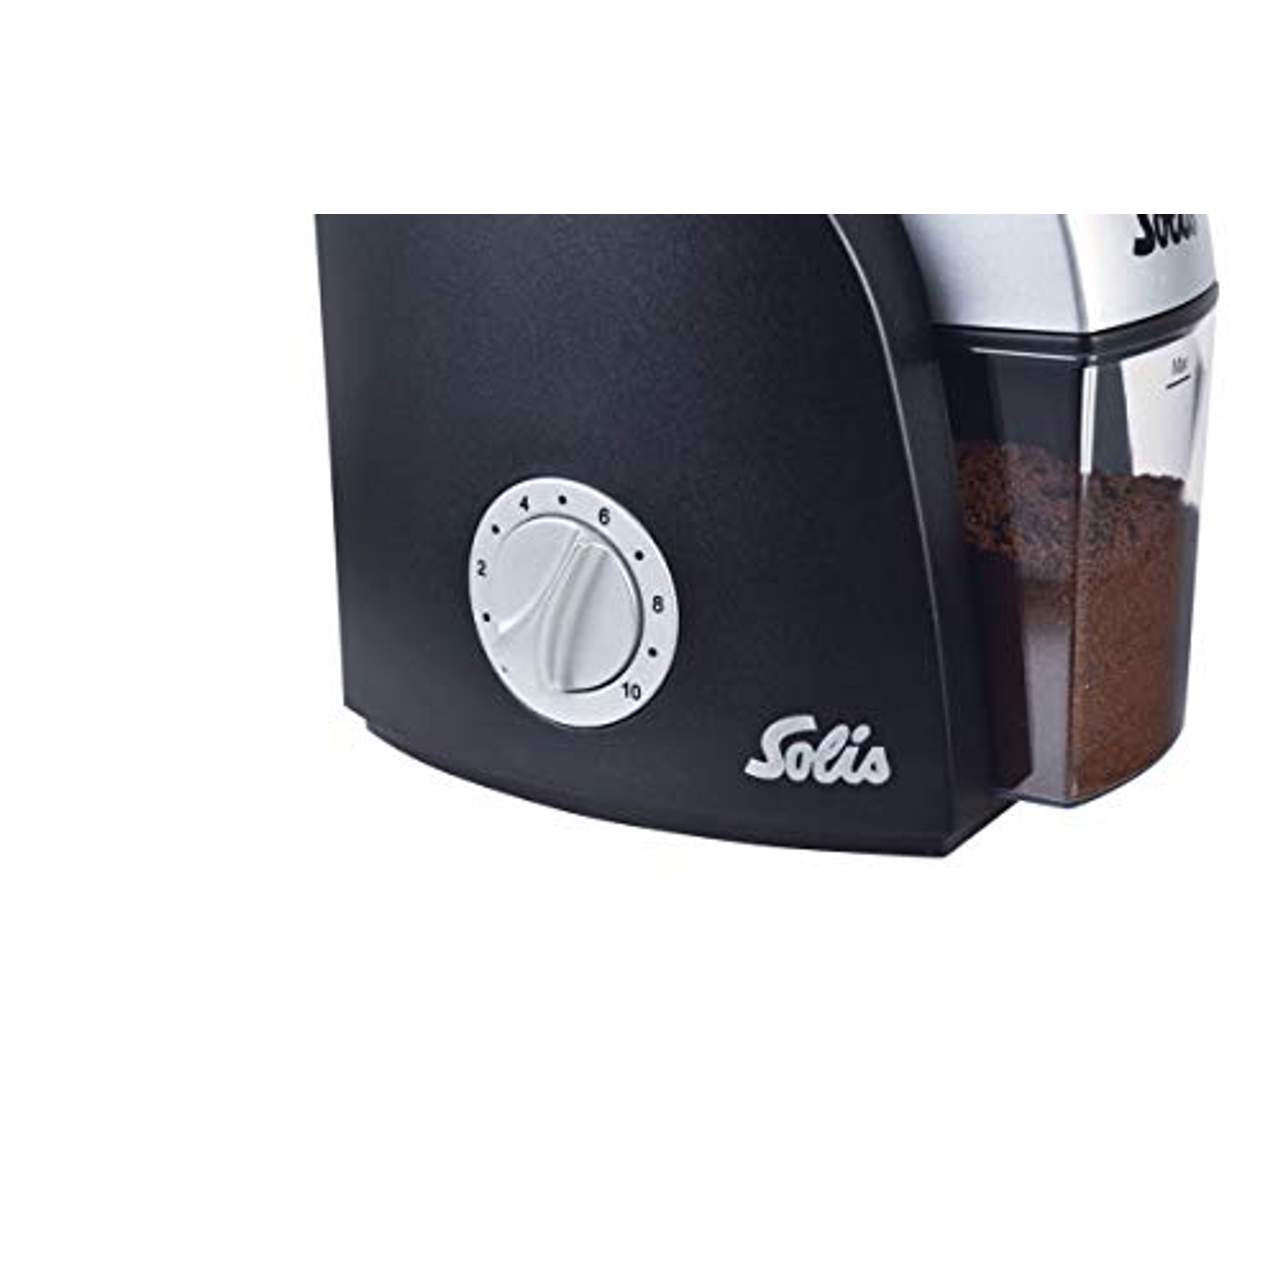 Solis Elektrisches Kaffeemahlwerk 22 Mahlstufen